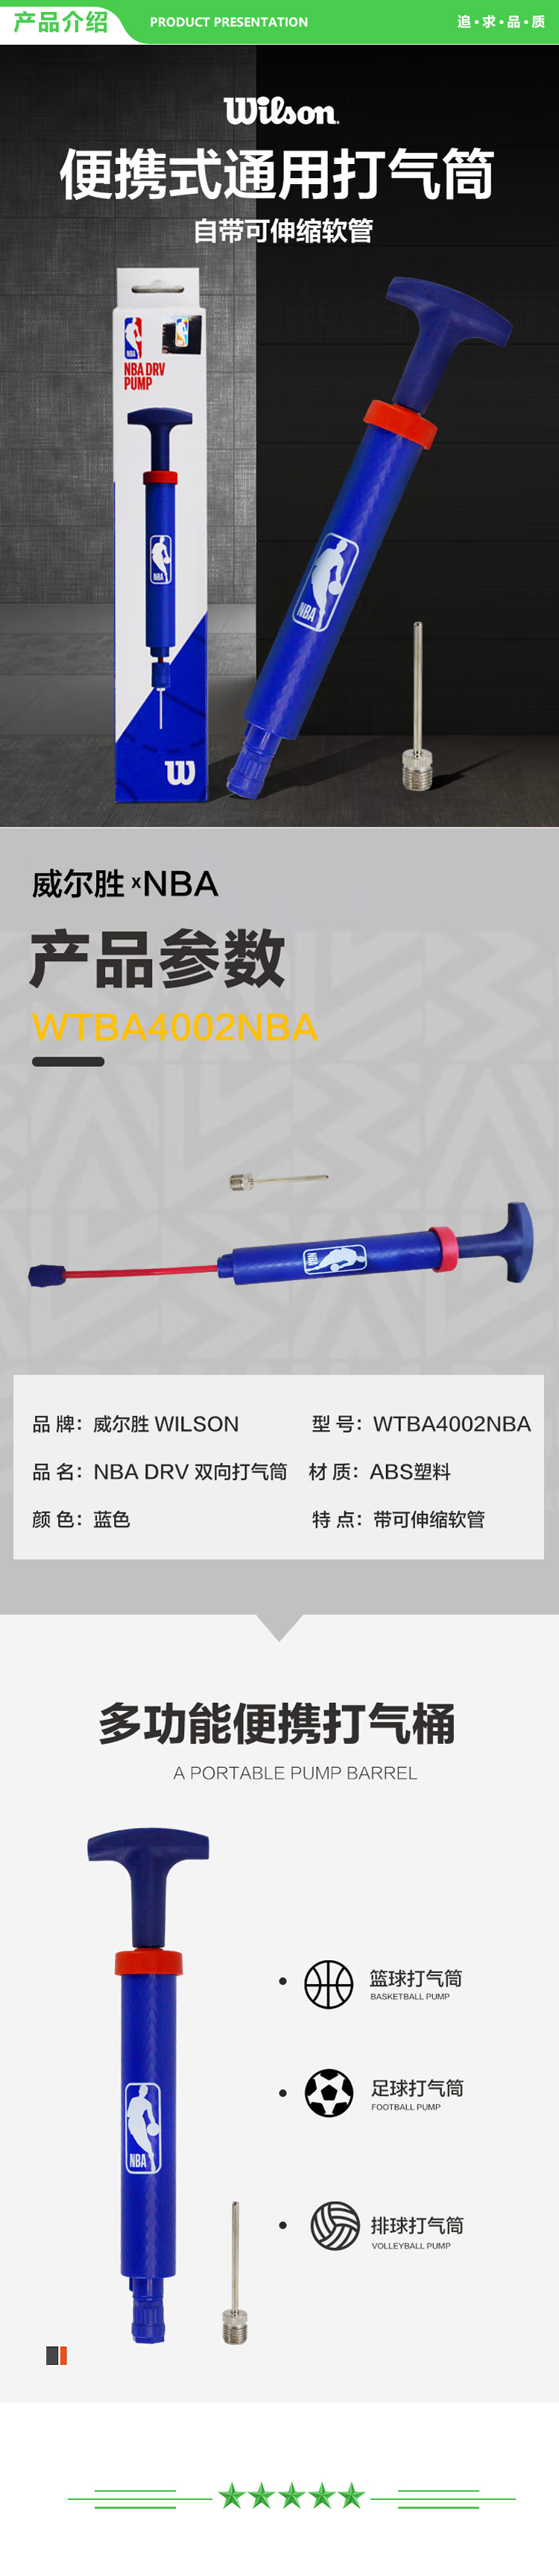 威尔胜 Wilson WTBA4002NBA 打气筒 NBADRV双向便携式 篮球足球排球 通用打气筒自带可伸缩软管 .jpg